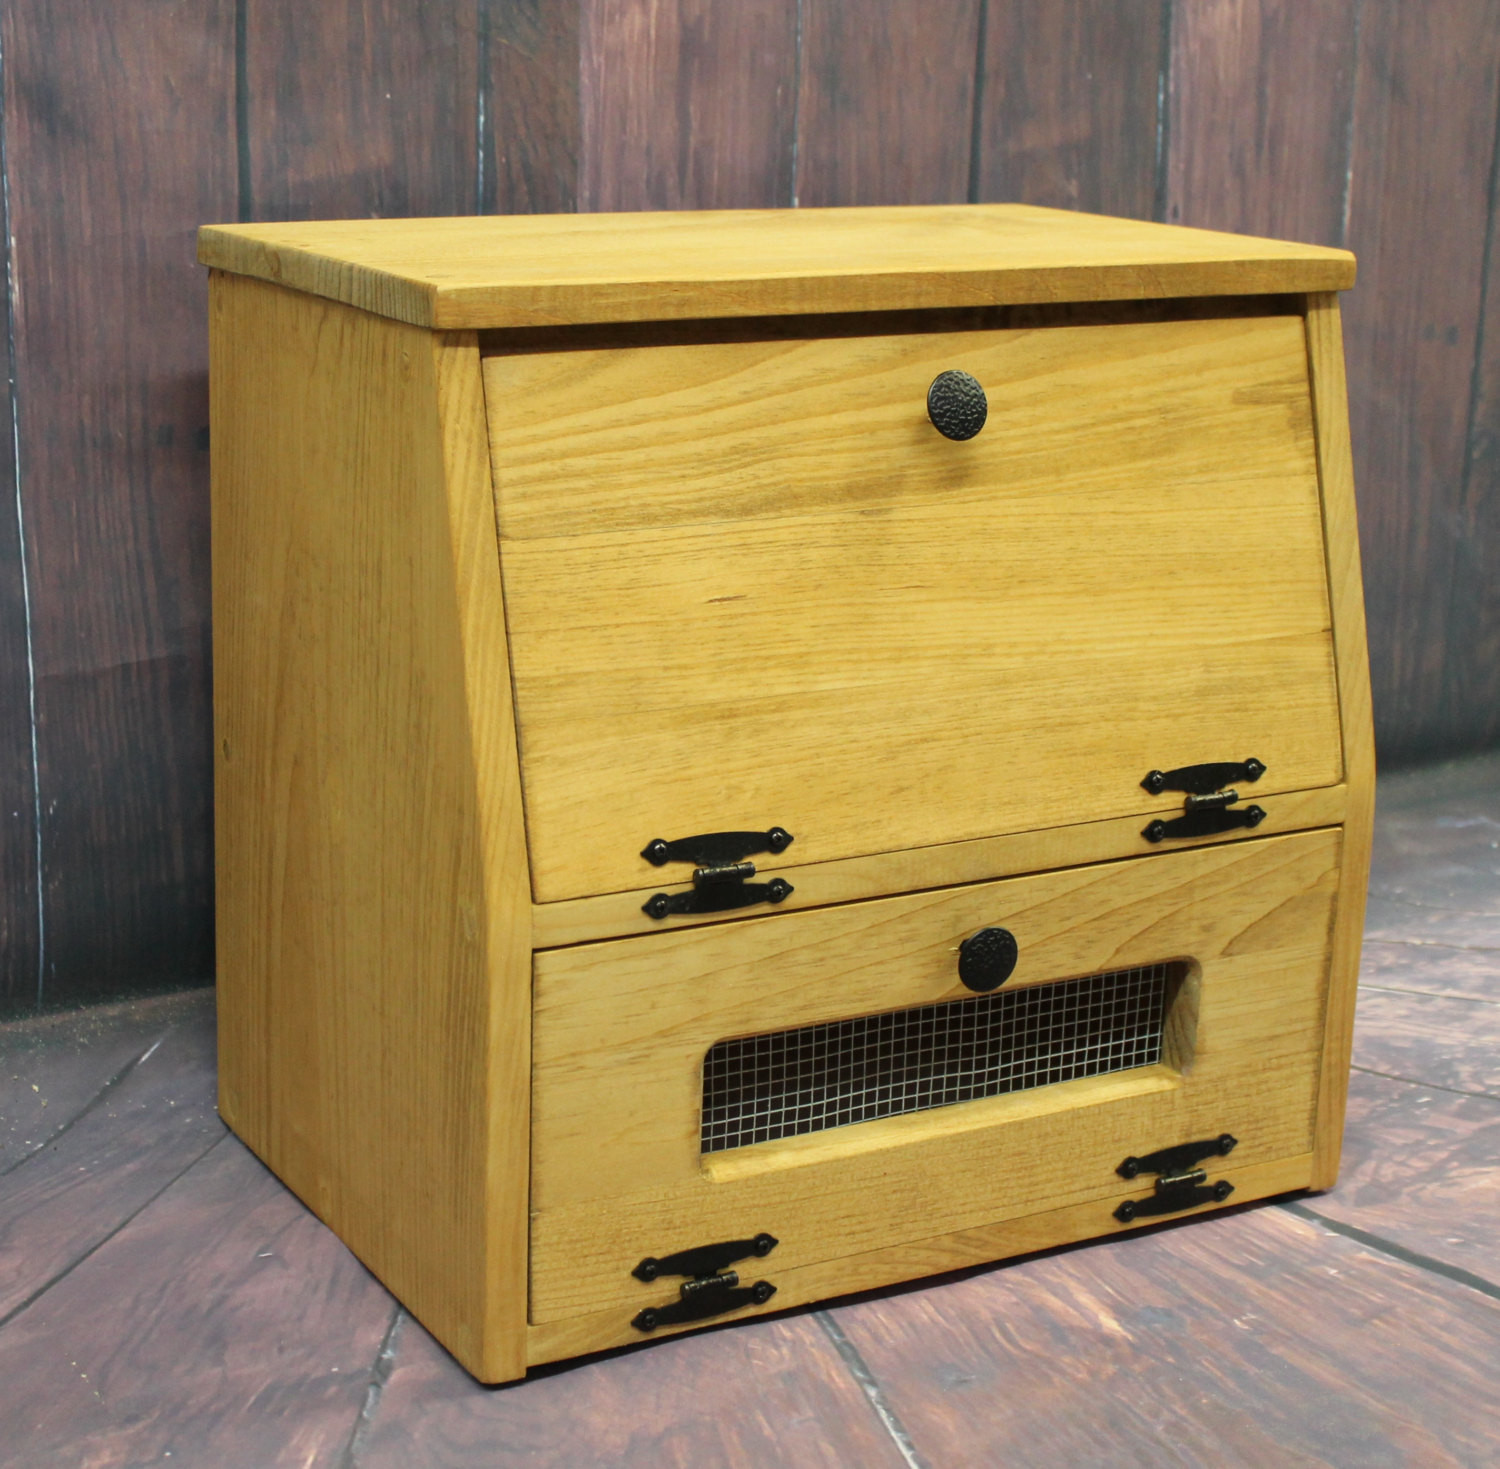 Wooden Kitchen Storage
 Wooden Bread Box Kitchen Storage Wood Ve able Potato Bin